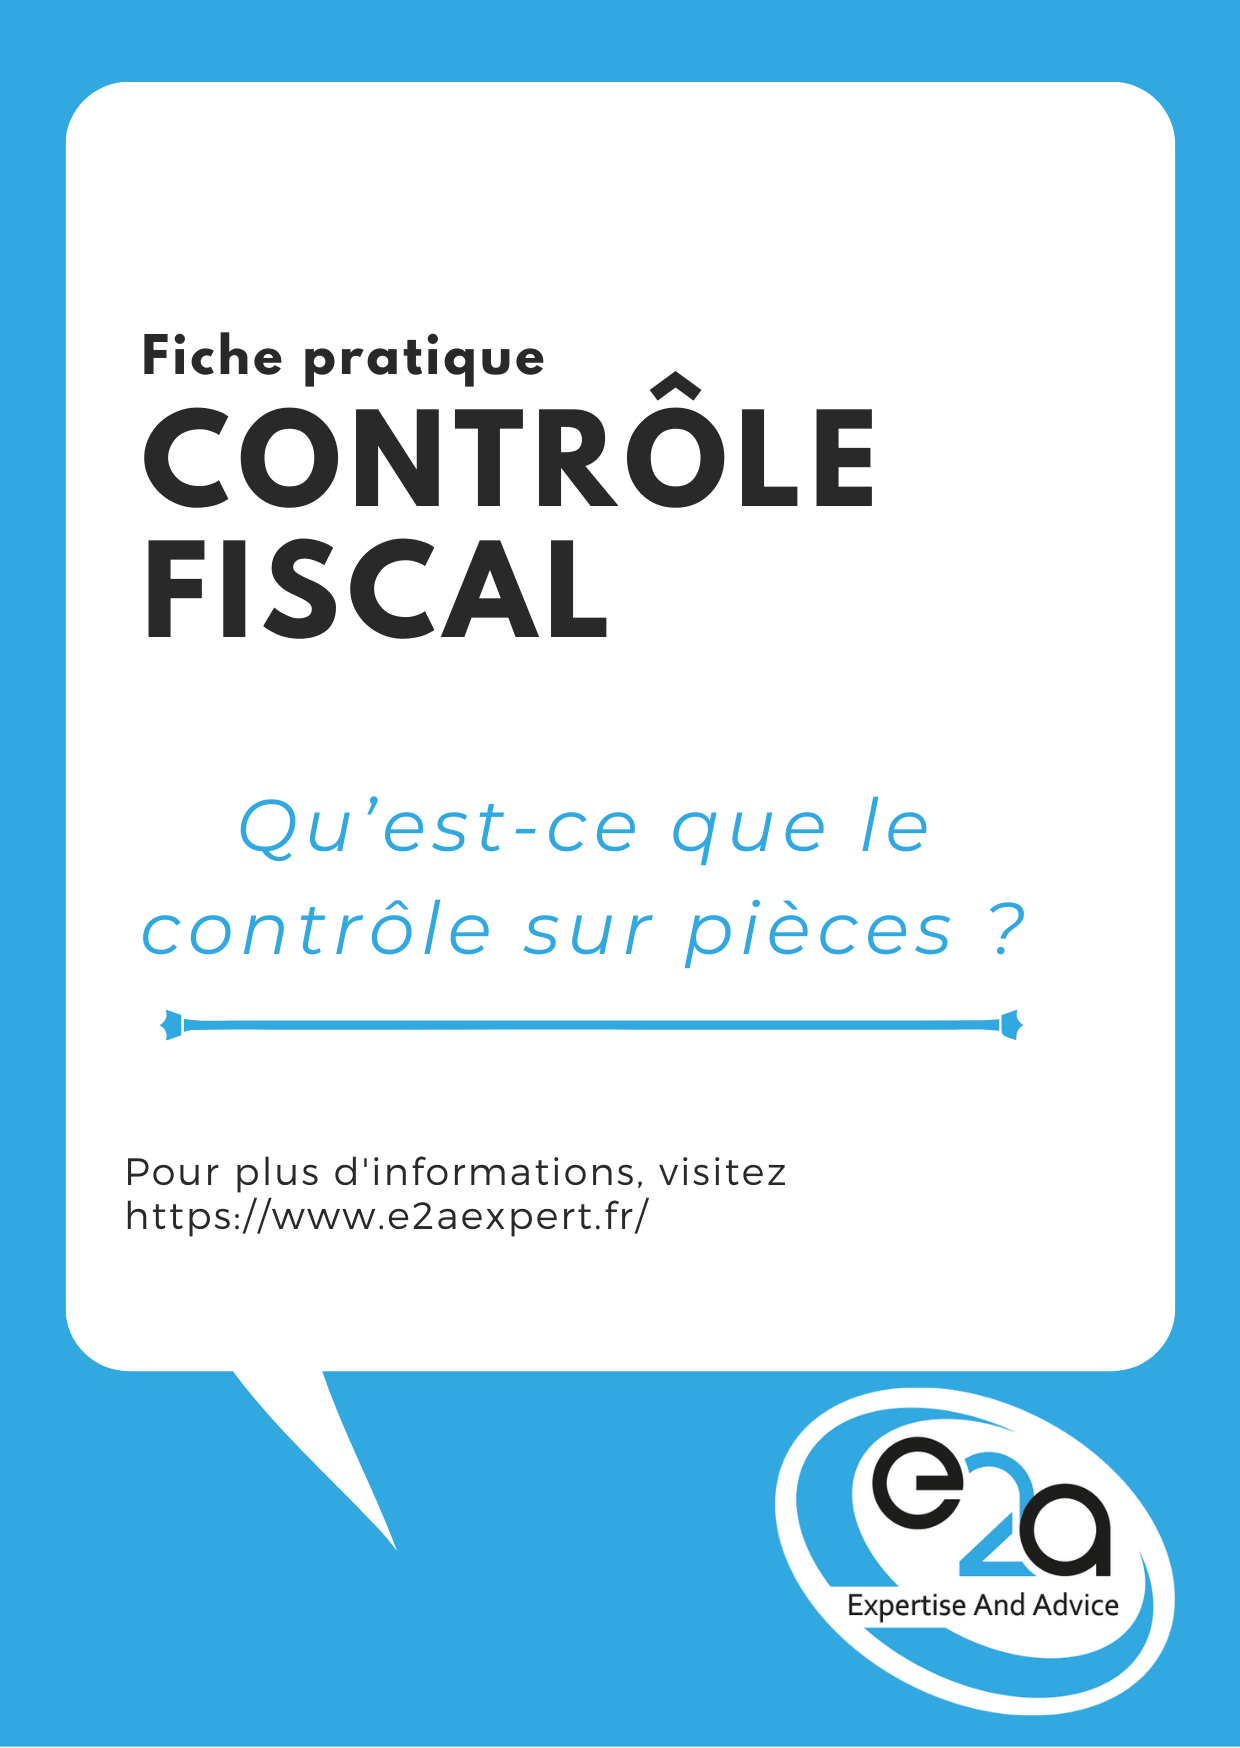 Fiche pratique contrôle fiscal